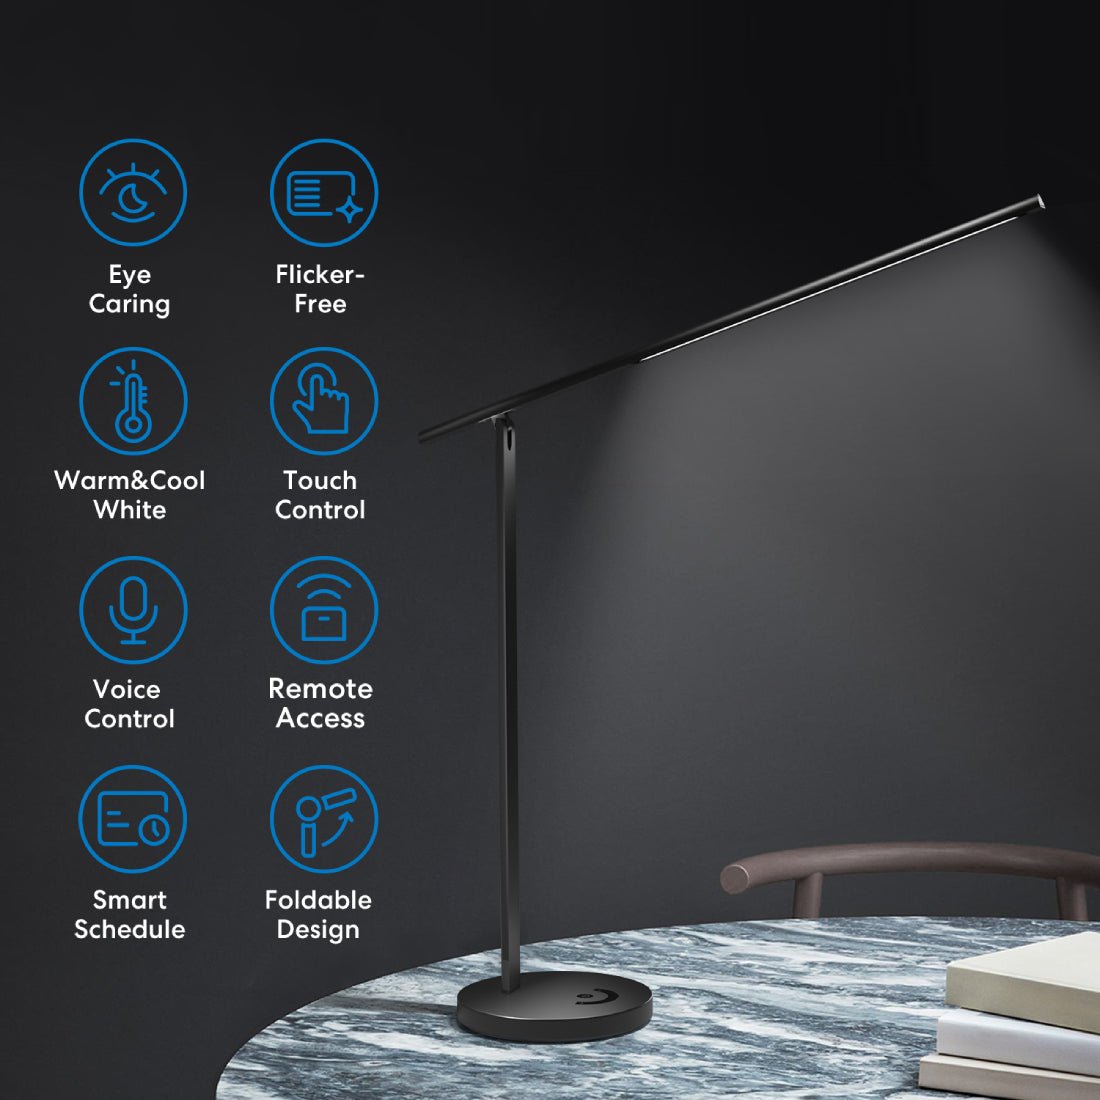 Meross Smart LED Desk Lamp - إضاءة - Store 974 | ستور ٩٧٤